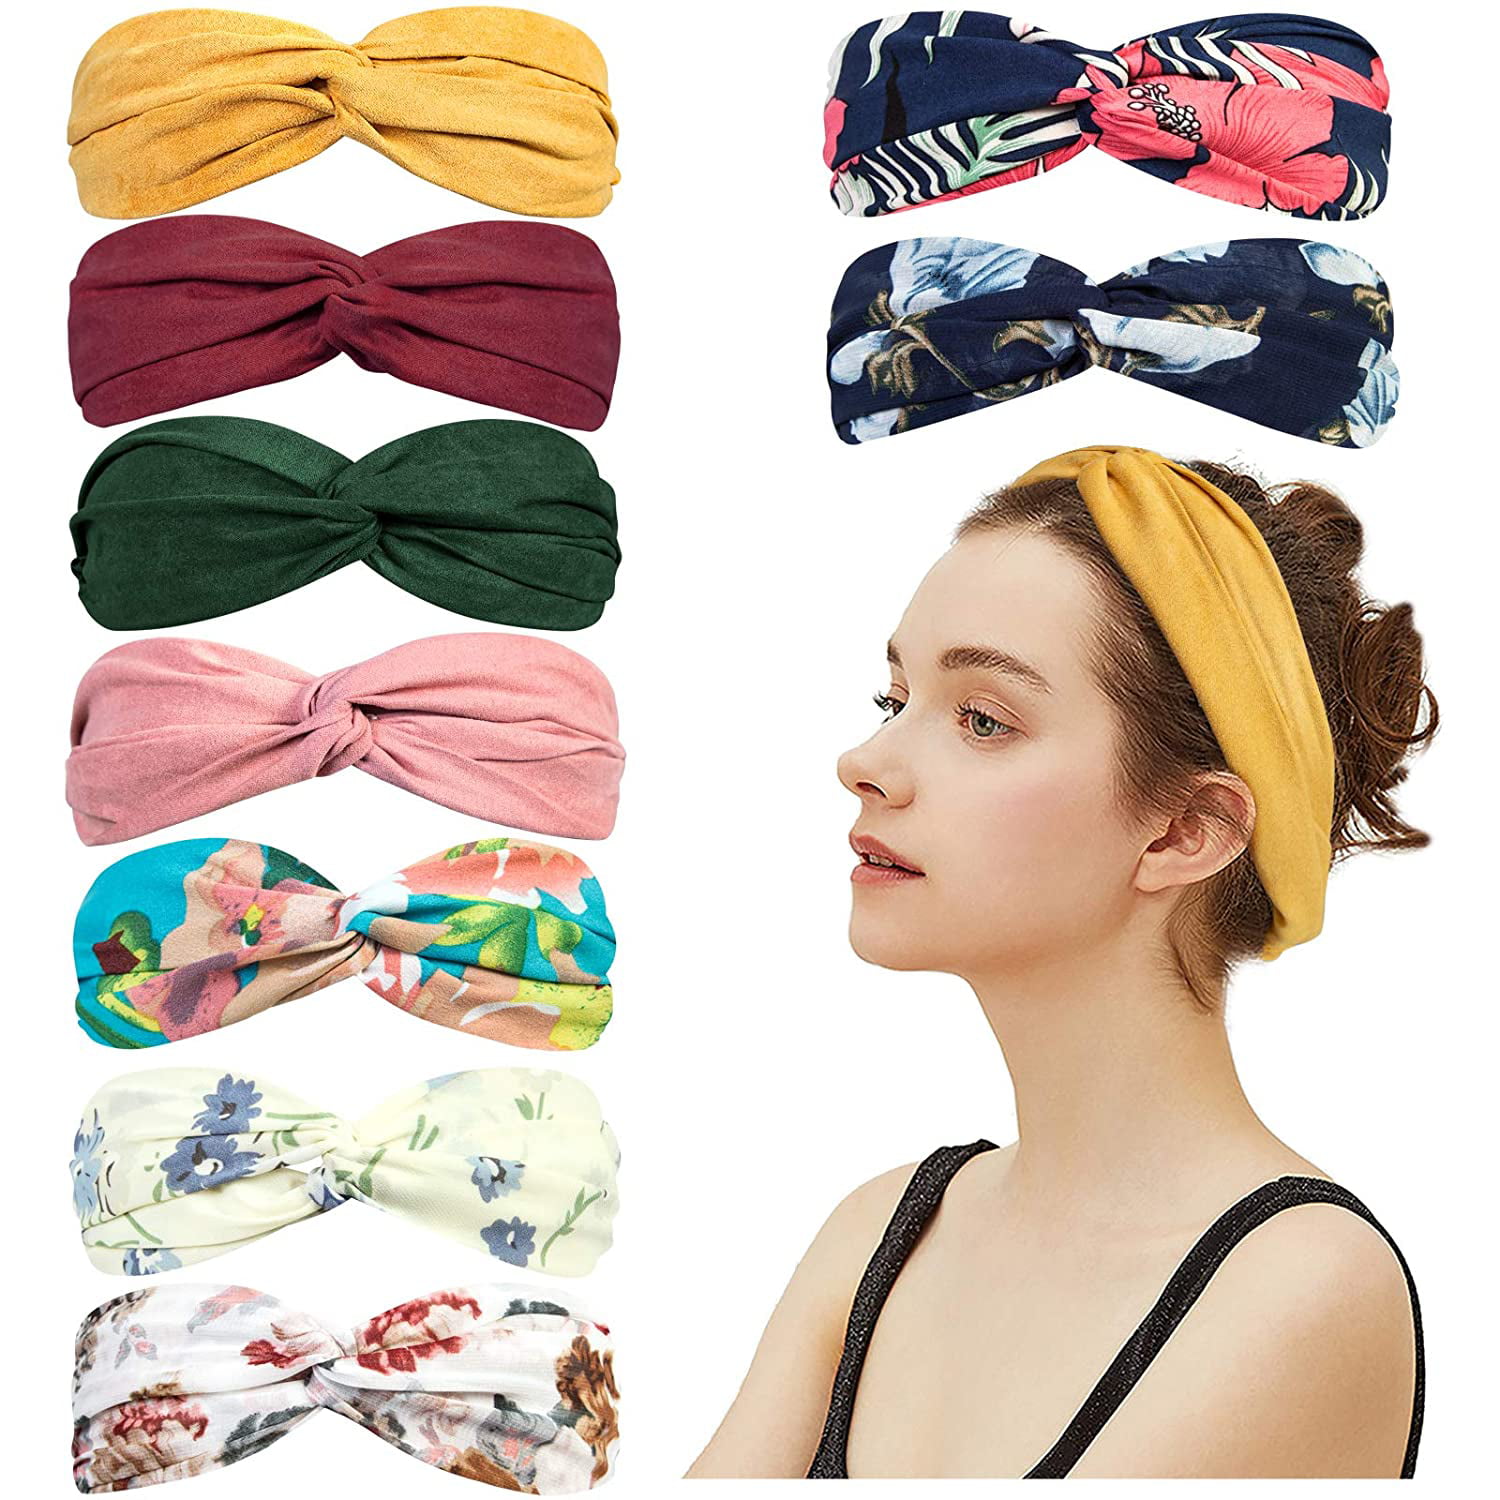 Sunshine Boho Fitness Headband Boho Sun Turban Twist Headband Sun Soft Stretchy Knot Headband Sunny Headbands for Women